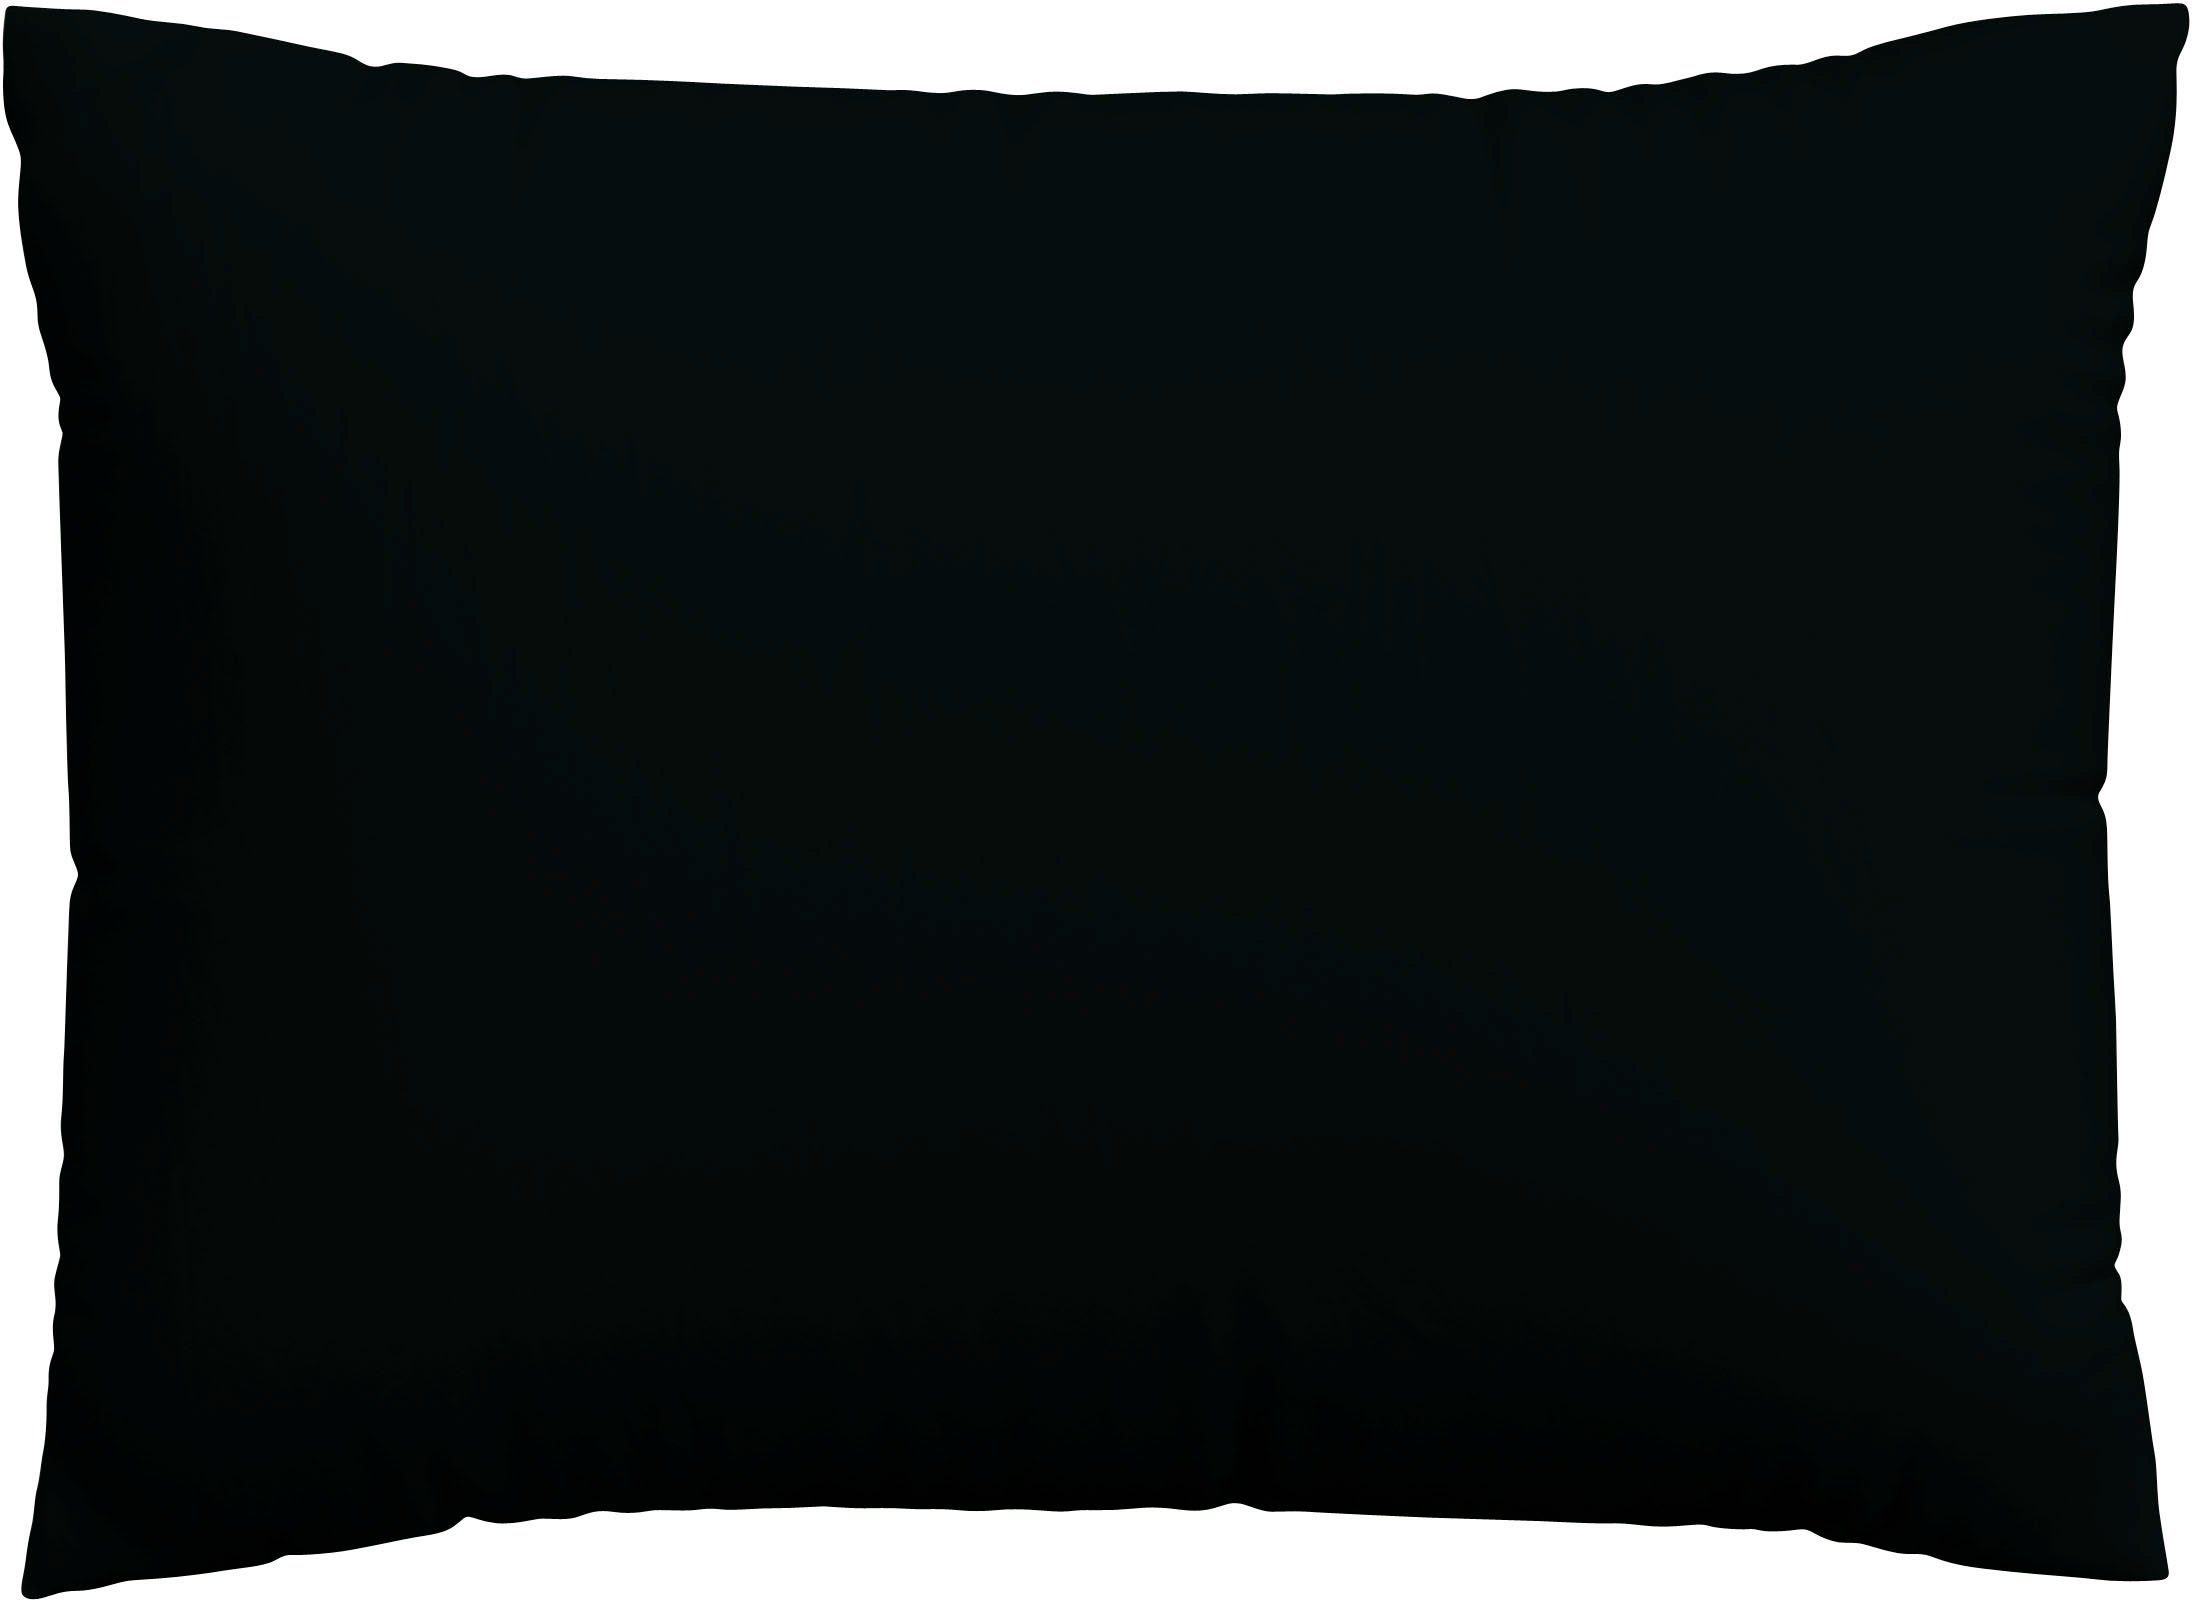 Kissenbezug Woven Satin aus Mako-Baumwolle, langlebig, pflegeleicht, dicht gewebt, Schlafgut (1 Stück), Kissenhülle mit Reißverschluss, passender Bettbezug erhältlich